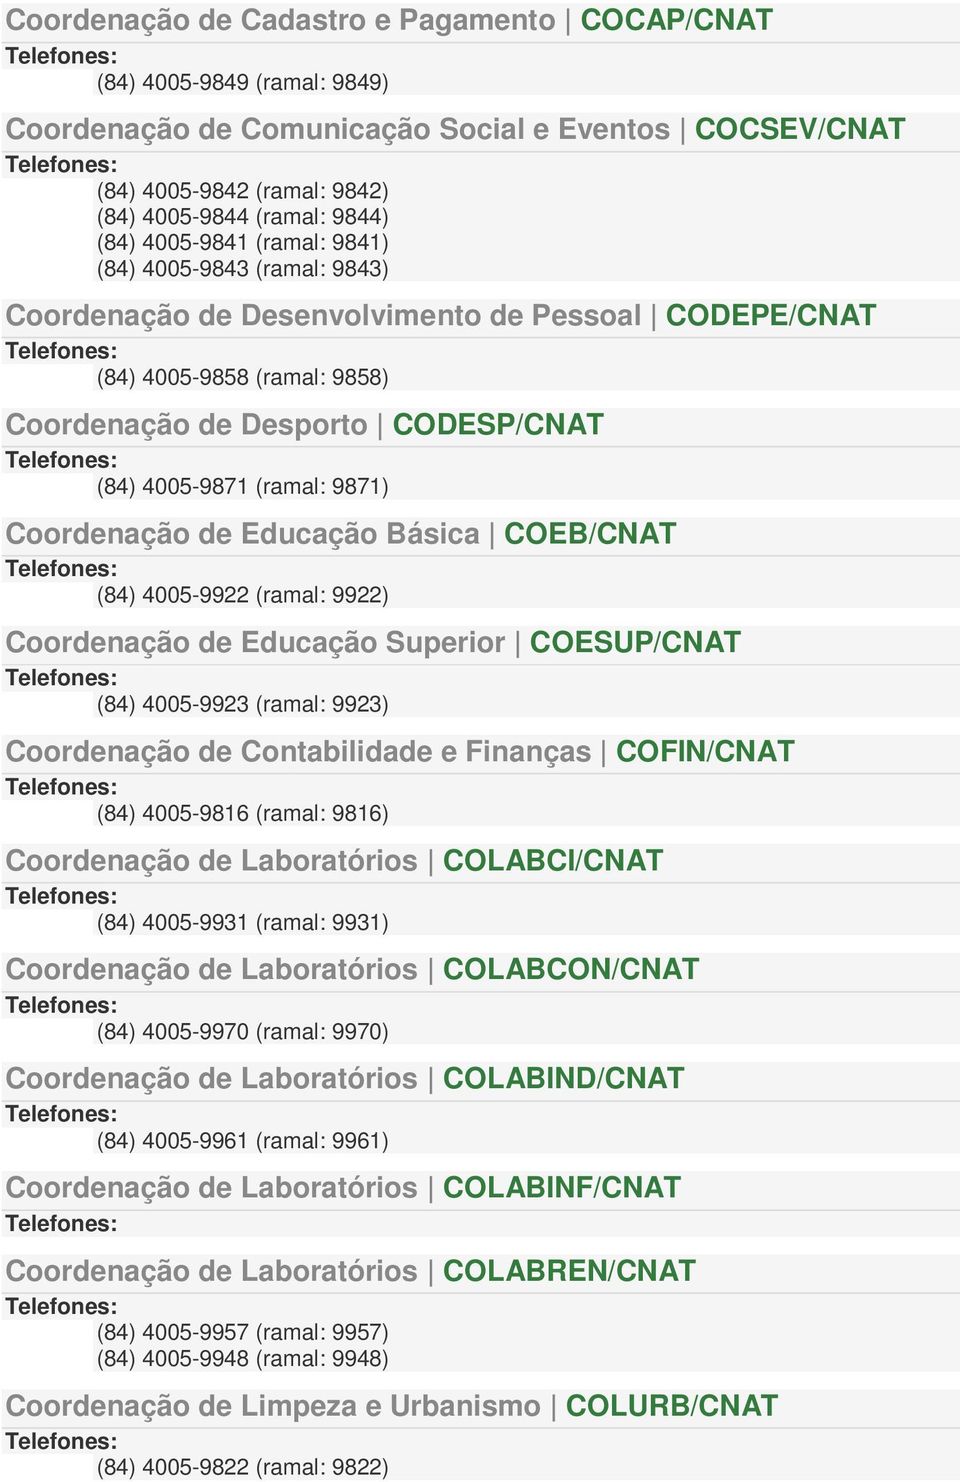 9871) Coordenação de Educação Básica COEB/CNAT (84) 4005-9922 (ramal: 9922) Coordenação de Educação Superior COESUP/CNAT (84) 4005-9923 (ramal: 9923) Coordenação de Contabilidade e Finanças